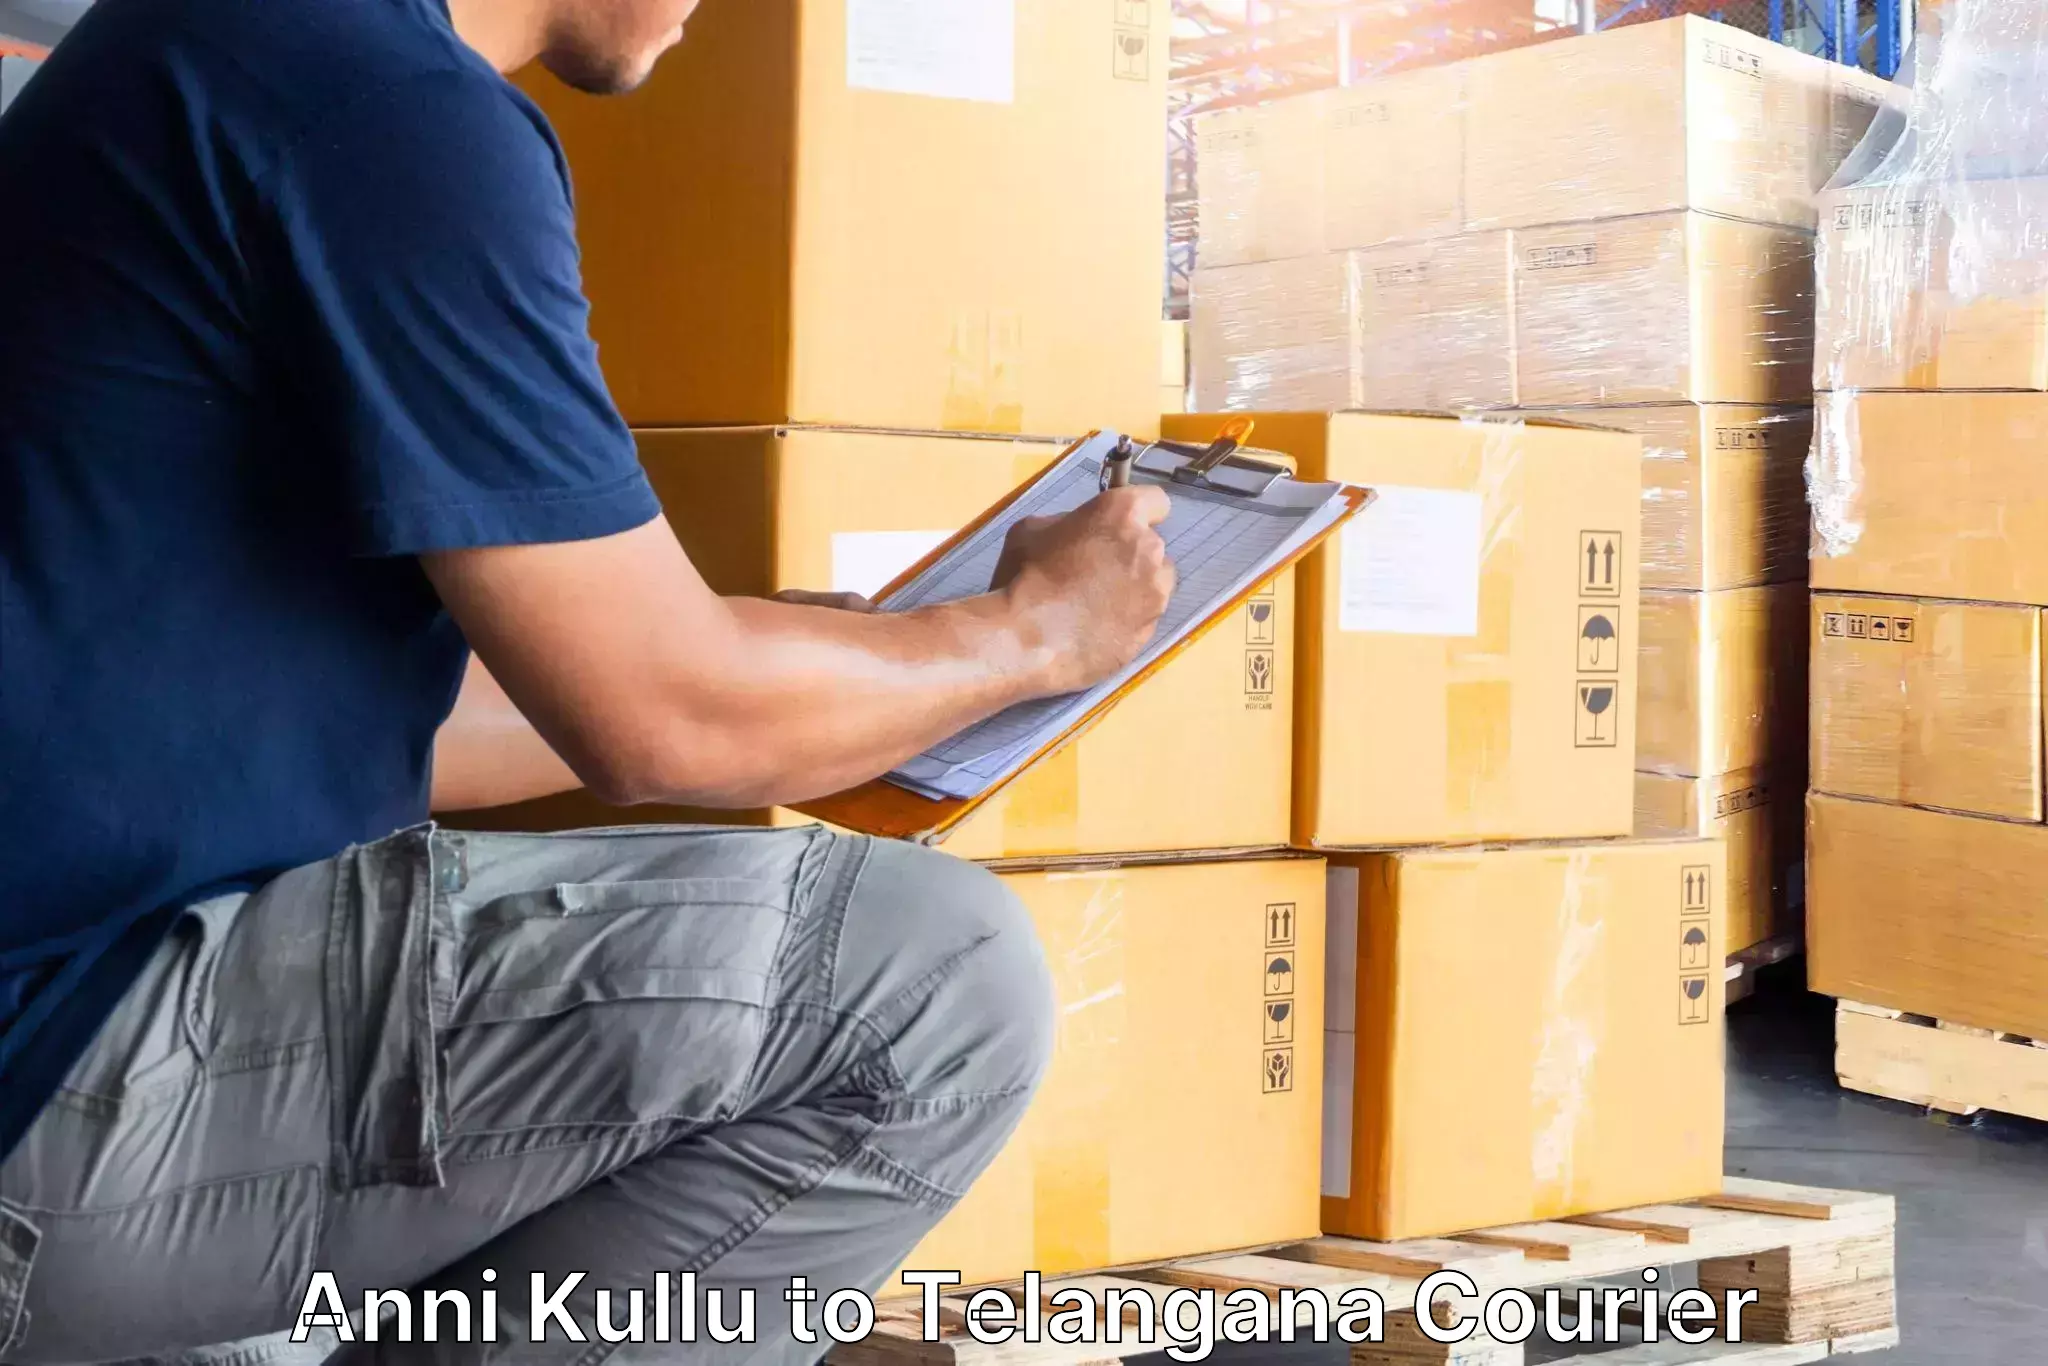 Professional movers in Anni Kullu to Manuguru